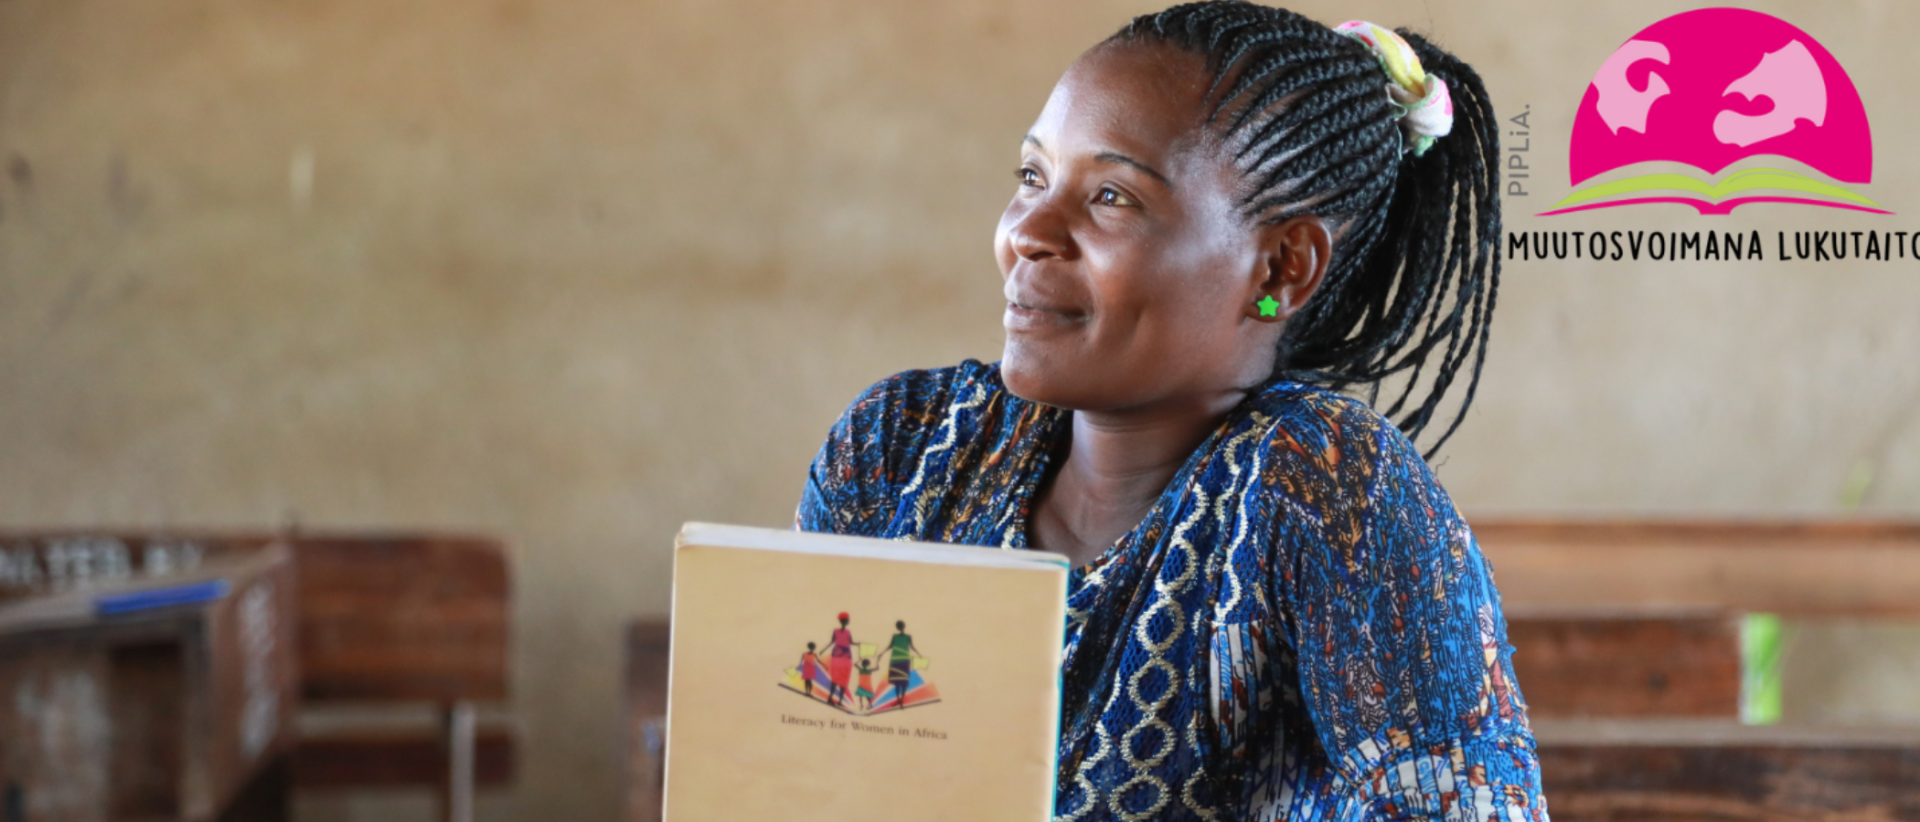 Afrikkalainen nuori nainen hymyilee kirja kädessä. Pipliaseuran logo Muutosvoimana lukutaito. Kuva: Pipliaseura